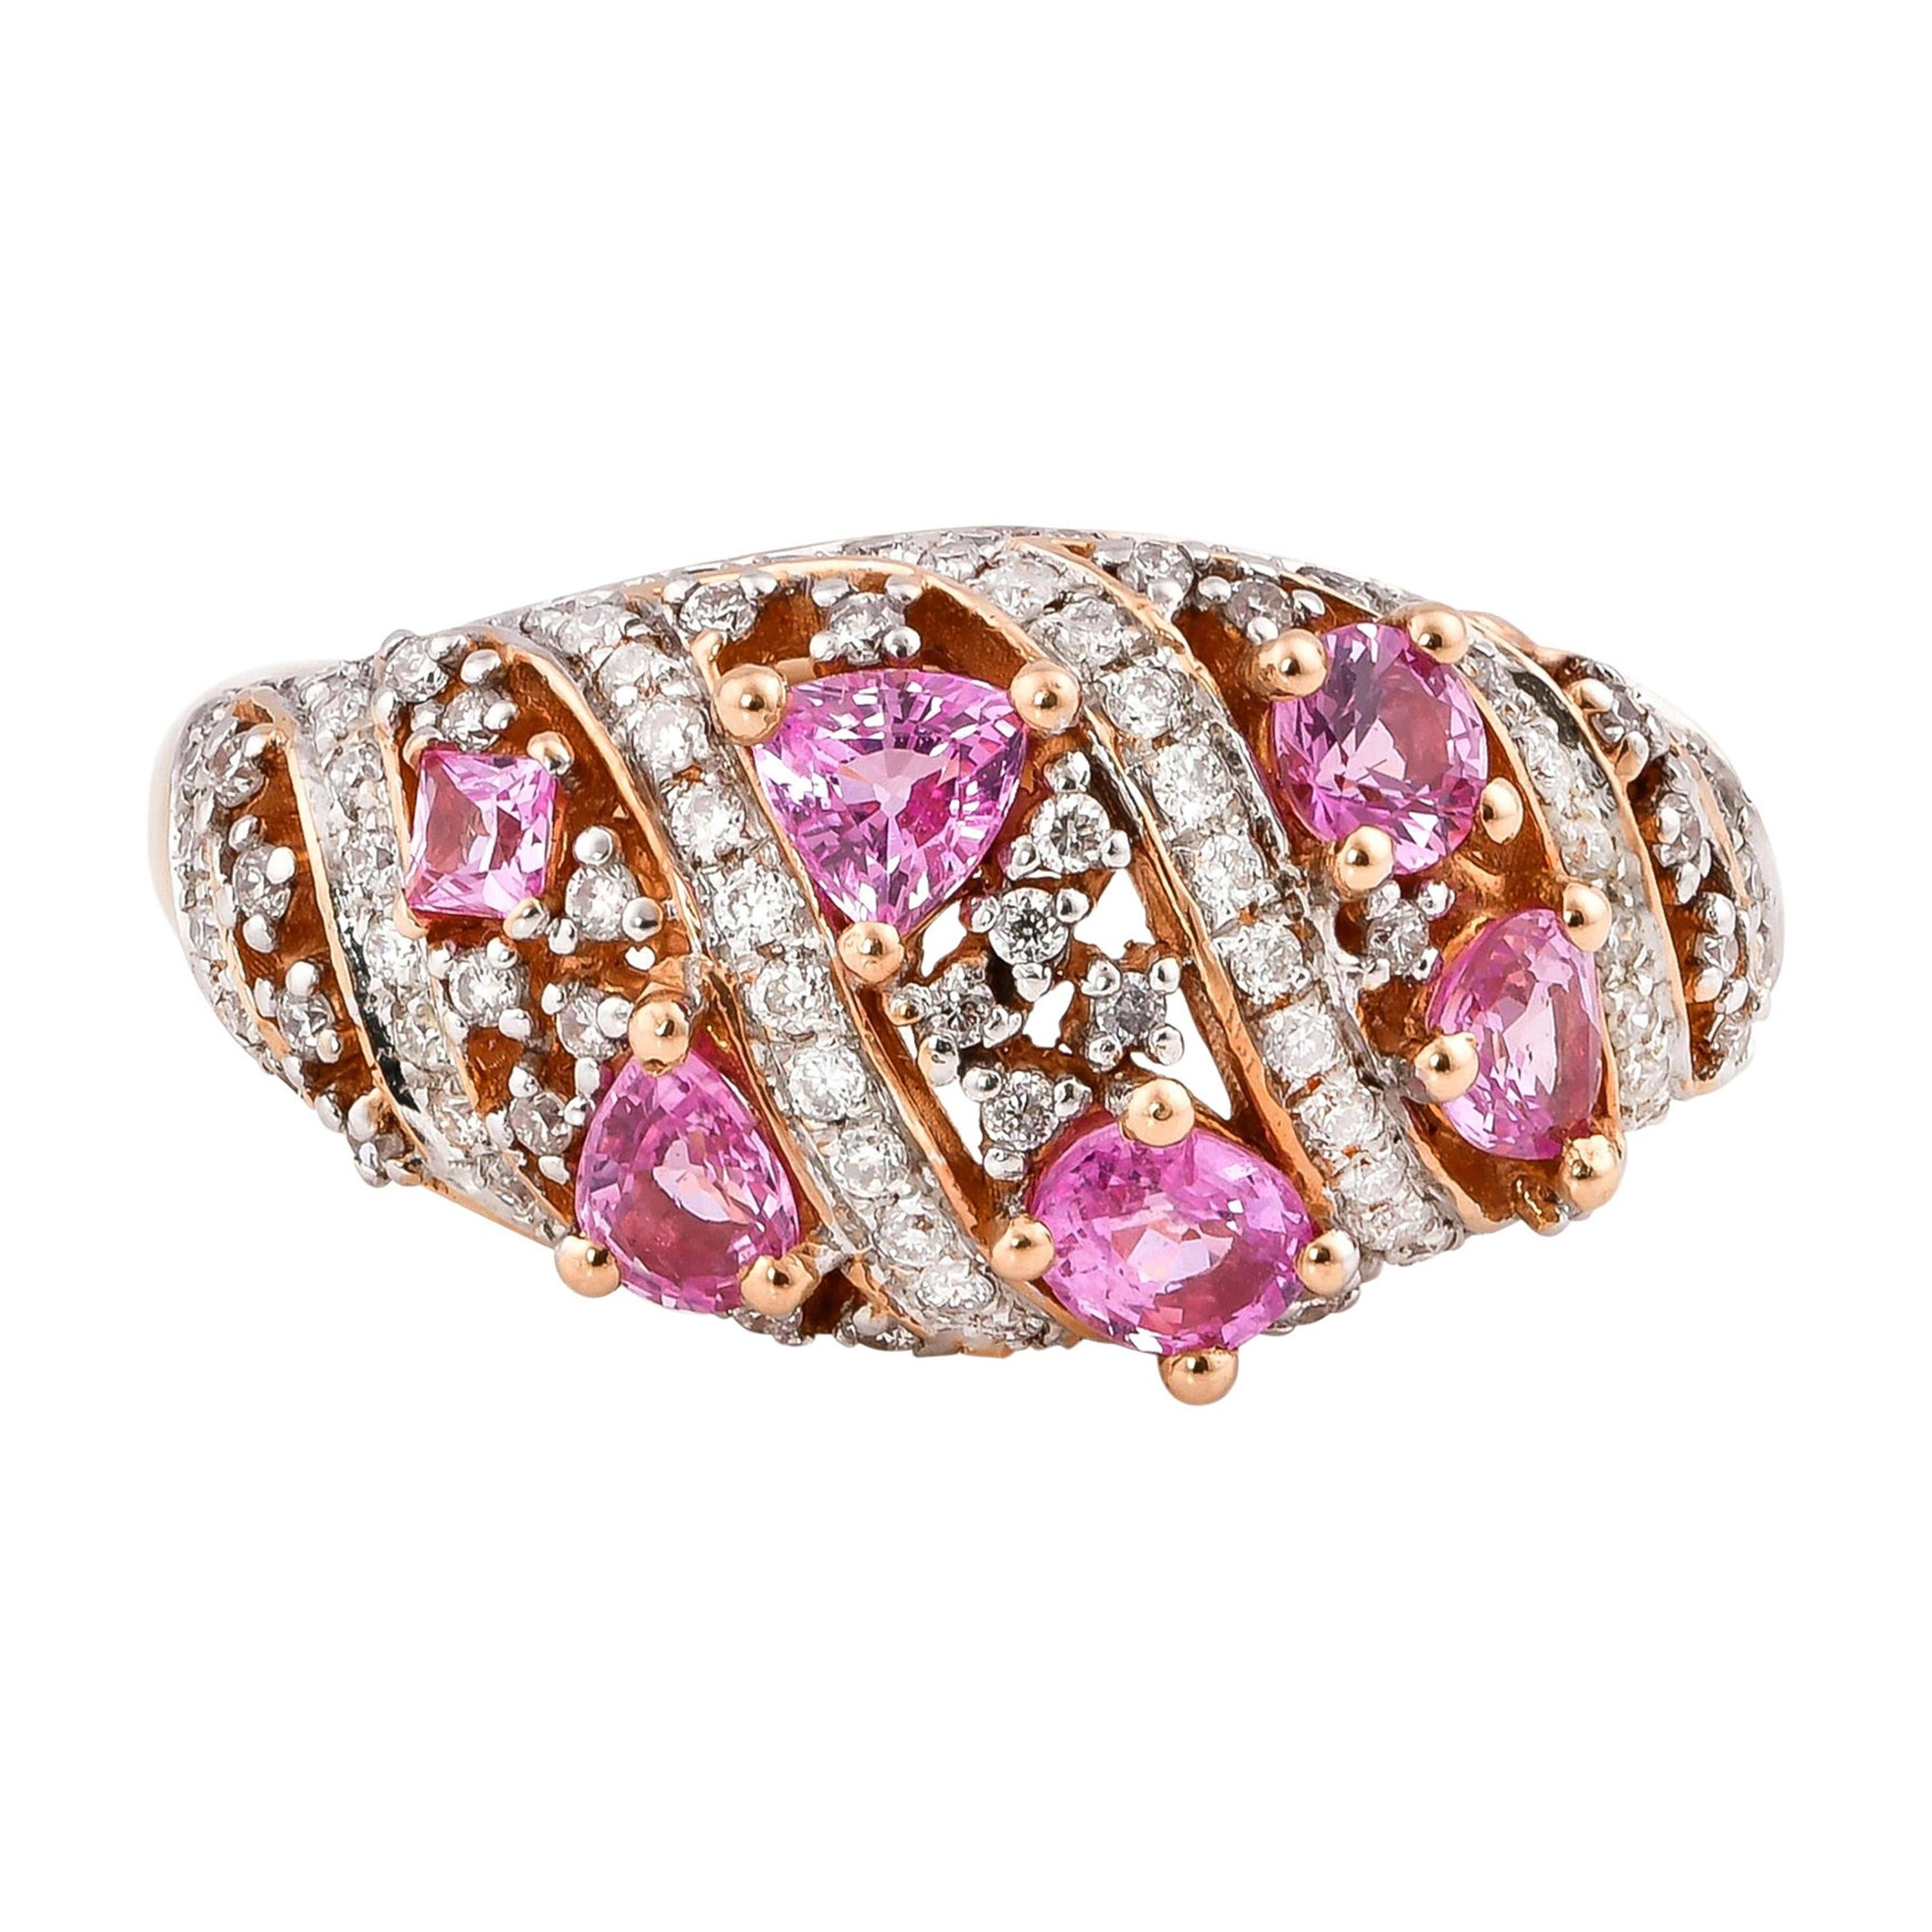 1.0 Carat Pink Sapphire Ring with Diamond in 18 Karat Rose Gold